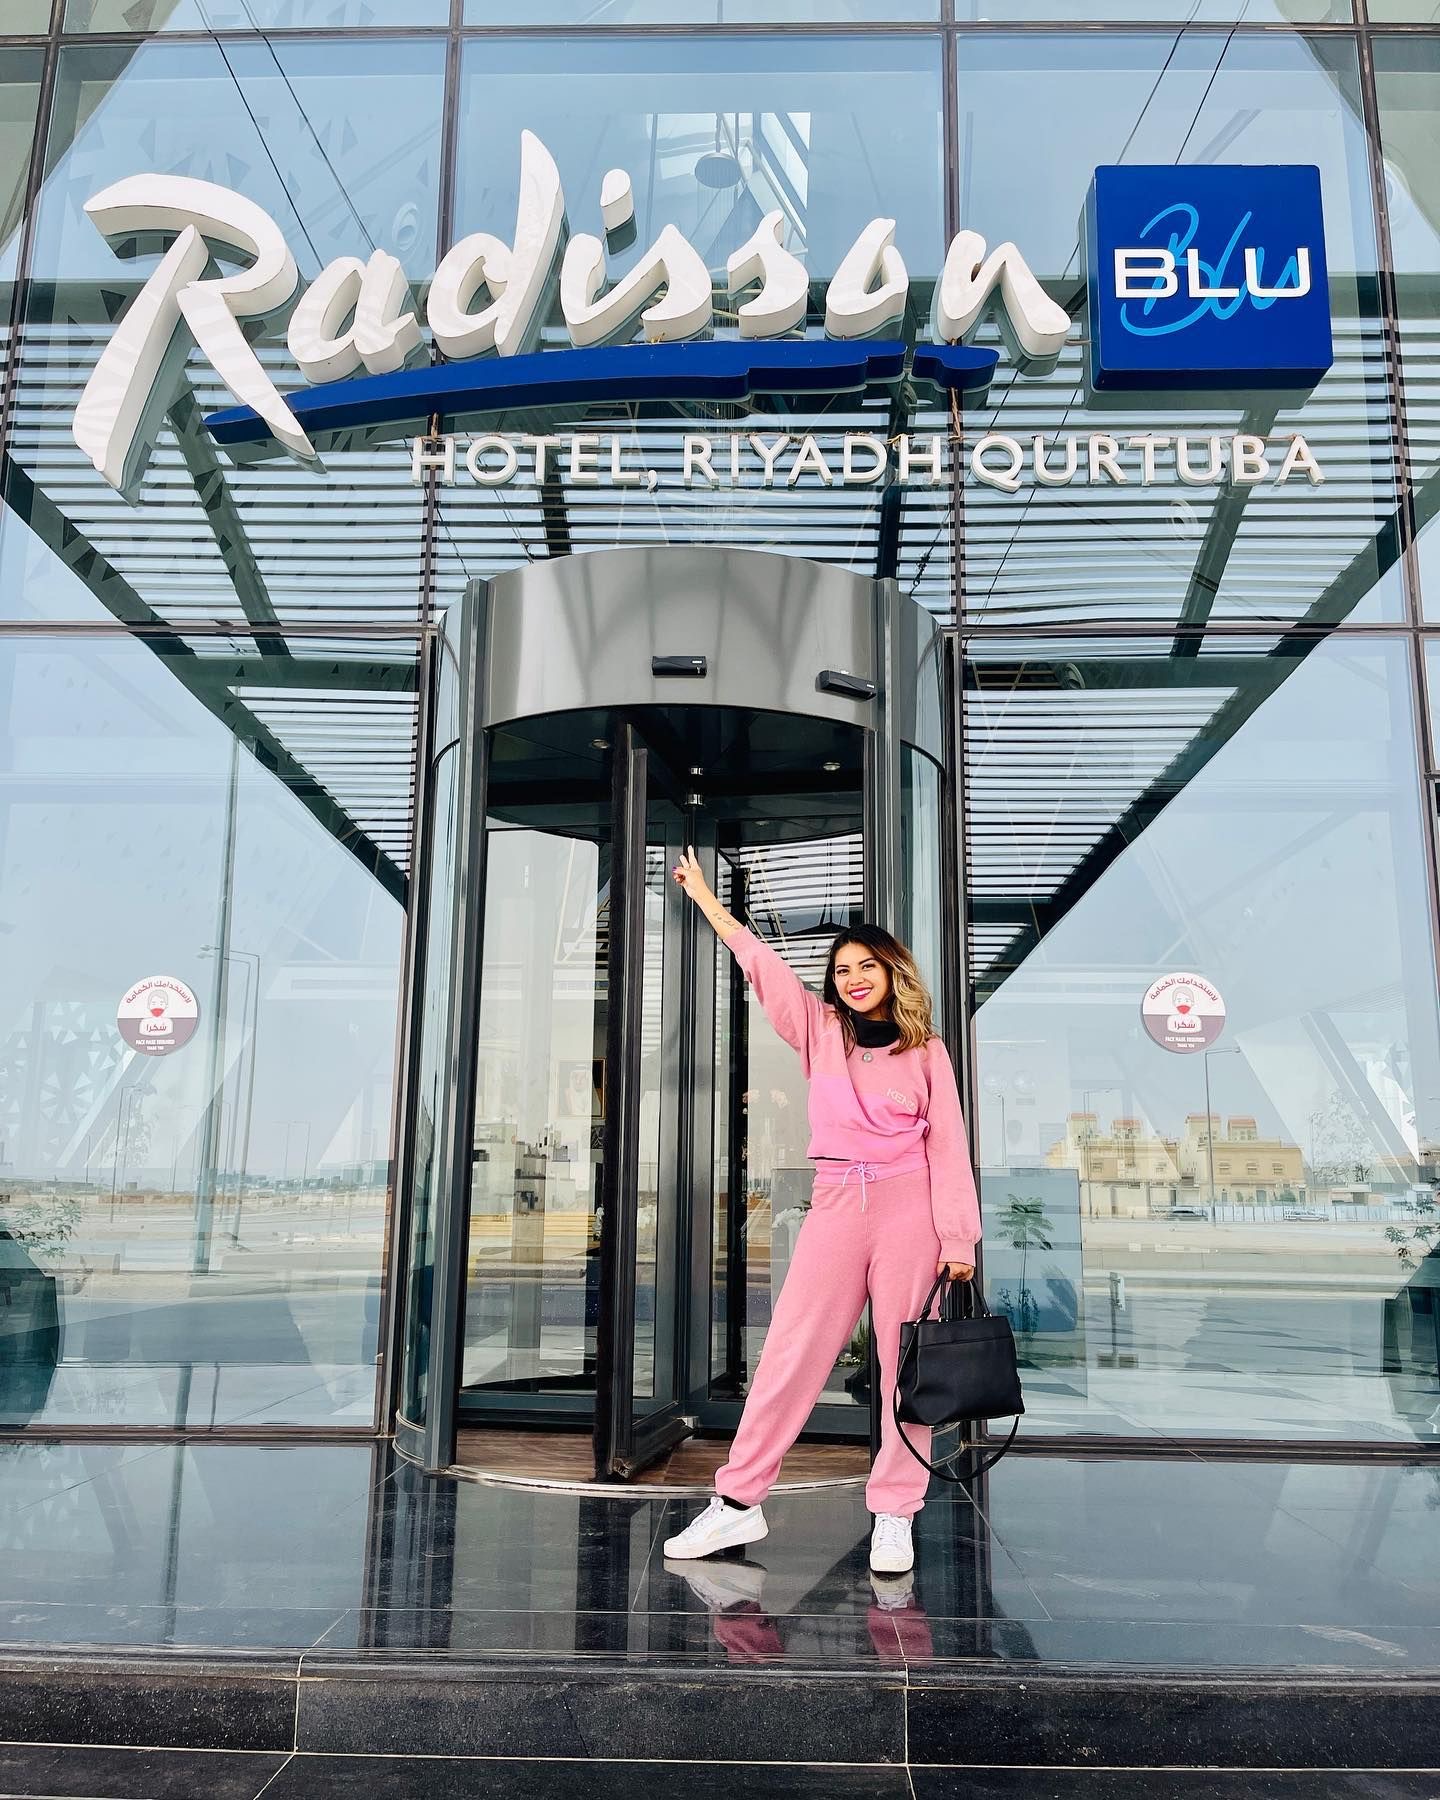 Radisson Blu Hotel, Riyadh Qurtuba Visiting my country 171st!